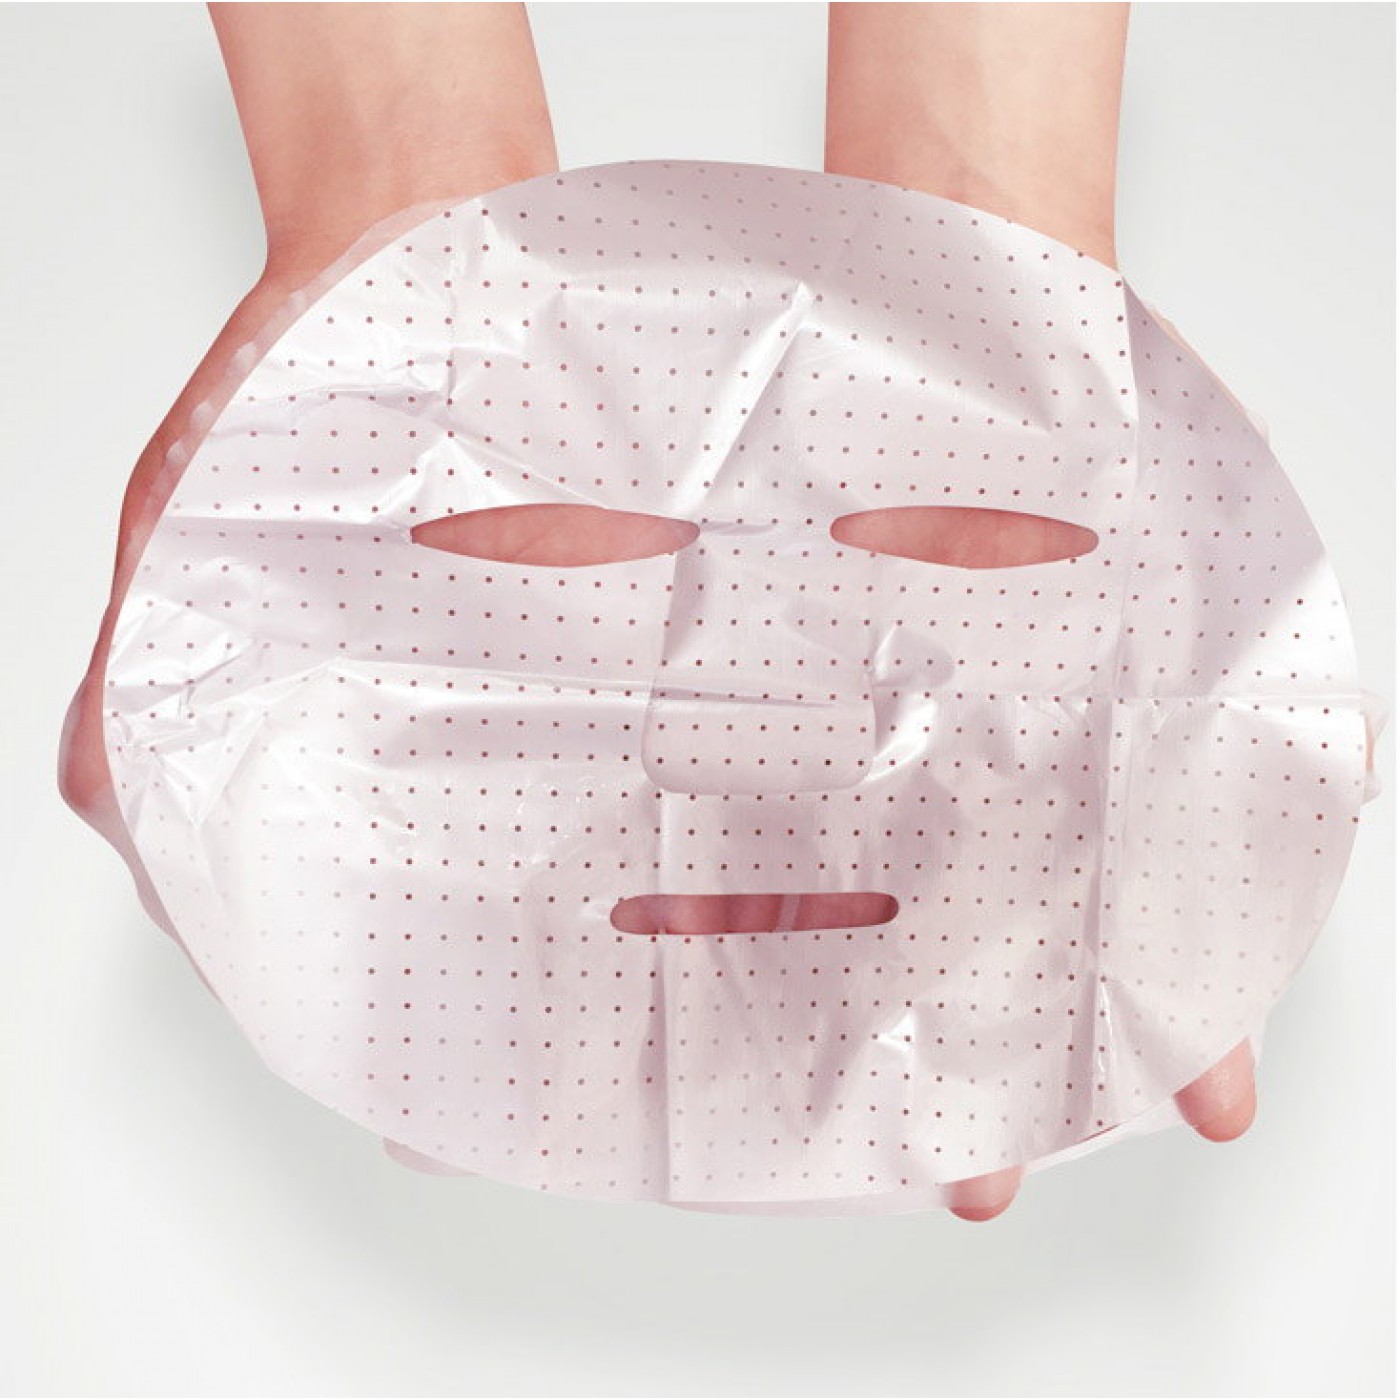 Способ применения корейских масок. Маска для лица. Тканевые маски для лица. Маски для лица упаковка. Матерчатая маска для лица.